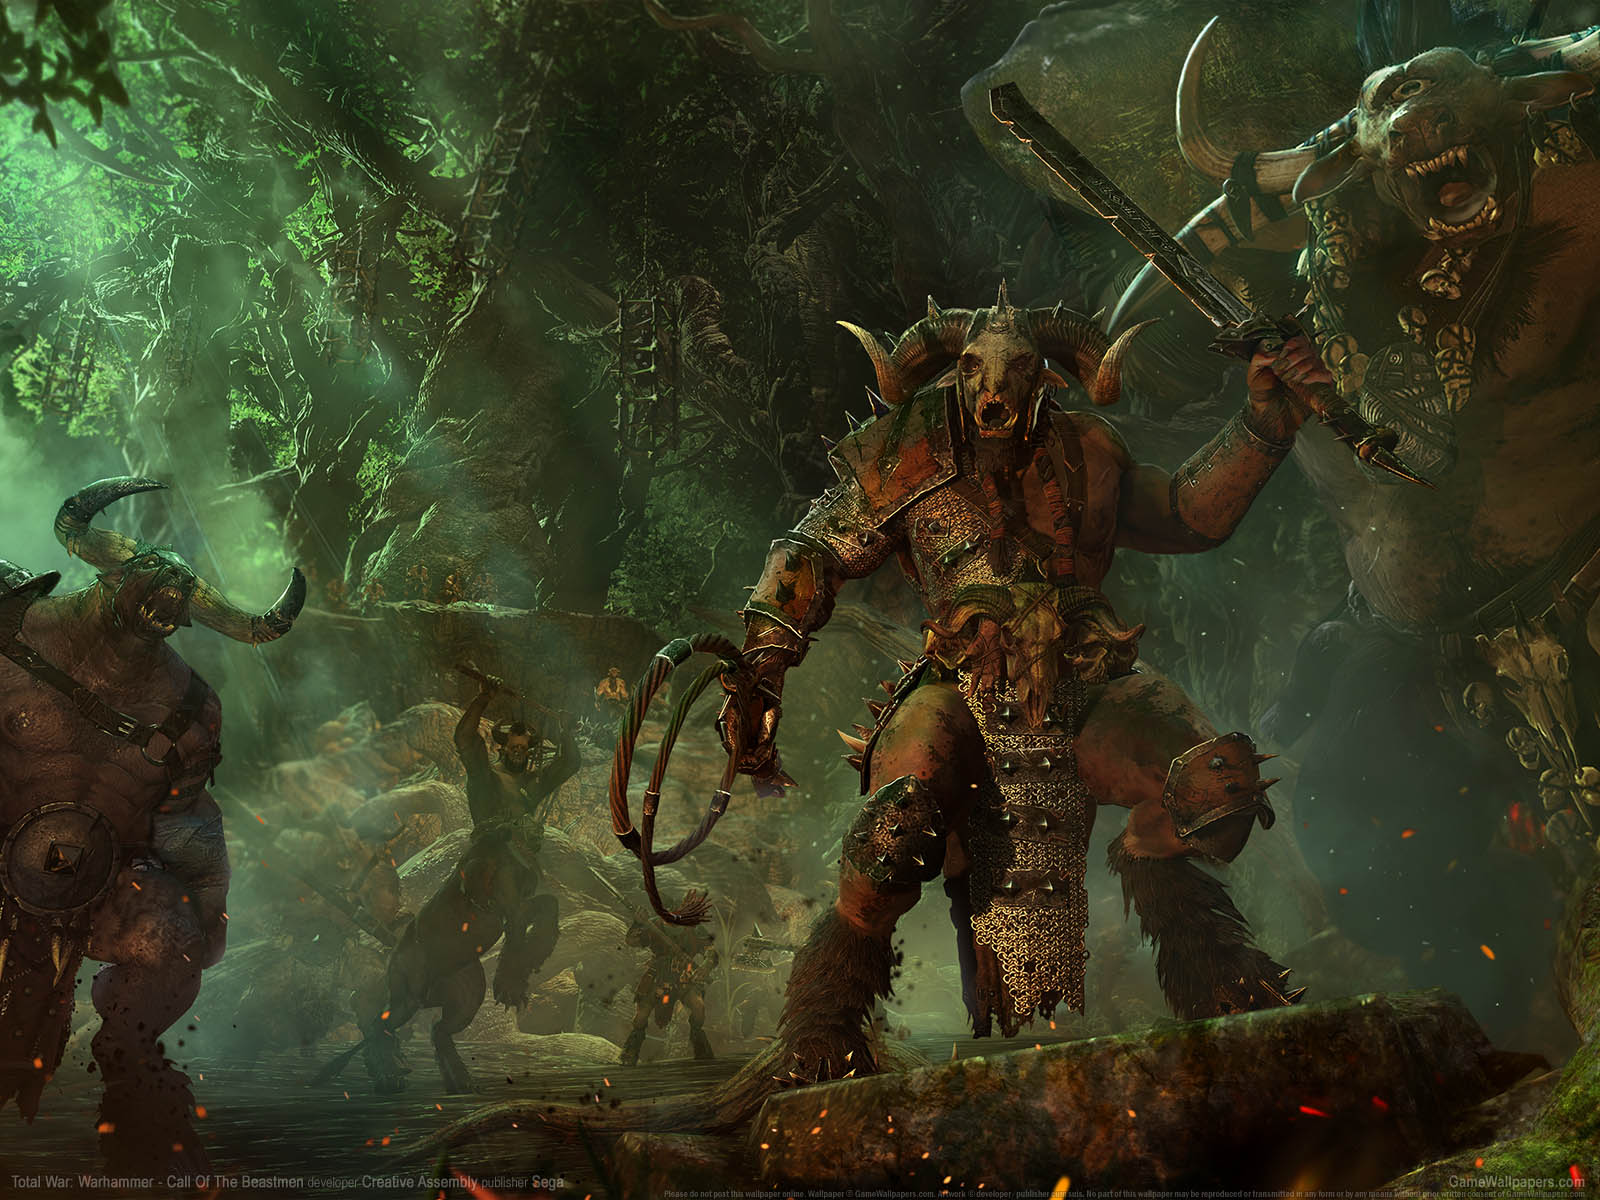 Total War%3A Warhammer - Call of the Beastmen wallpaper 01 1600x1200